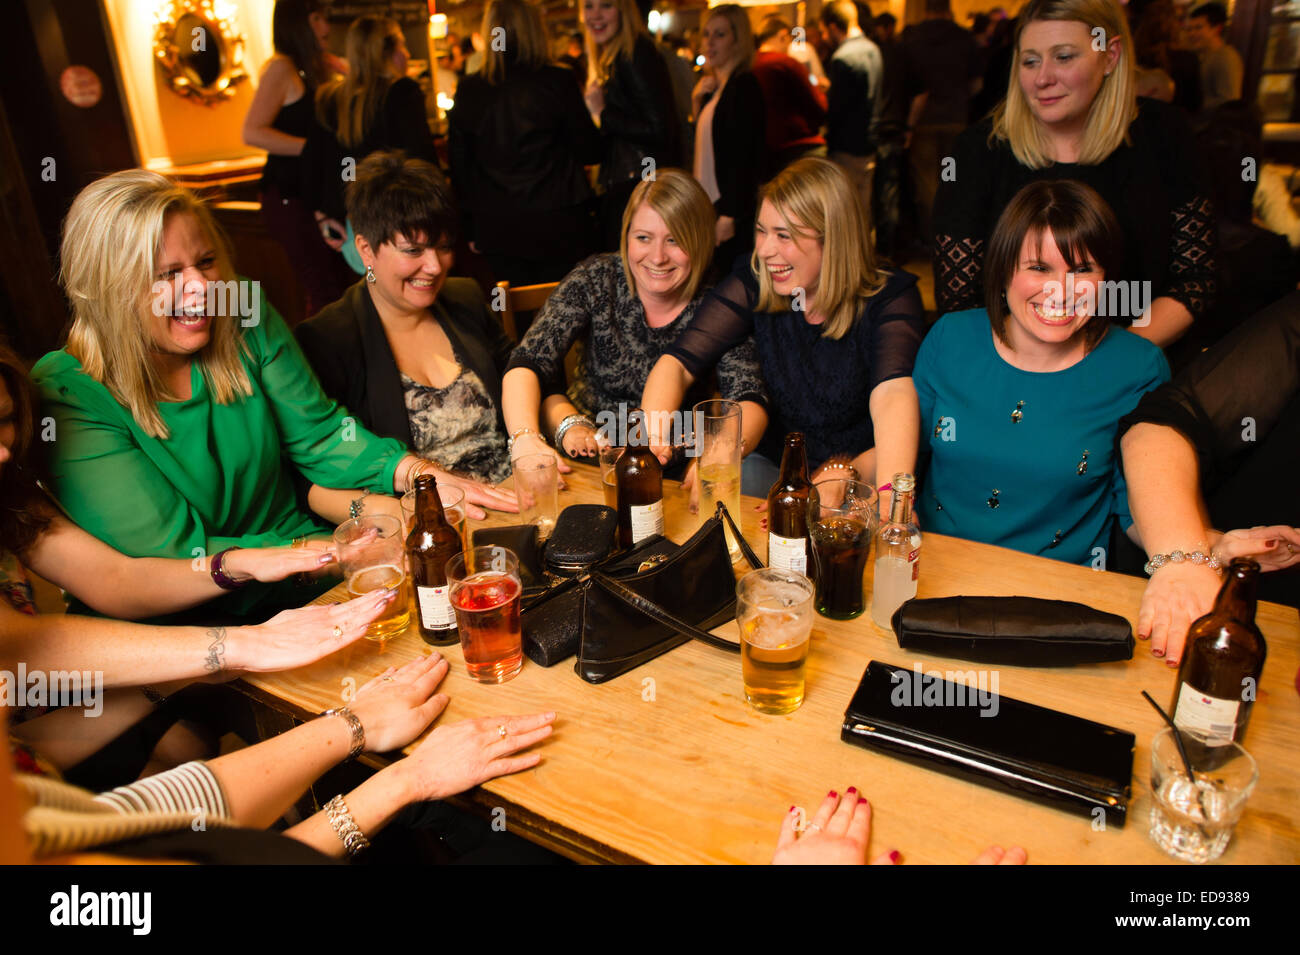 Un groupe de femmes les amis de rire et s'amuser jouant un jeu à boire dans un pub à Aberystwyth, Pays de Galles Royaume-uni le 'Black Friday', 'Black-eye vendredi' ou 'Mannonce vendredi' - le dernier vendredi avant Noël, jour où traditionnellement les gens se rendent en ville pour célébrer avec leurs collègues et camarades de travail de bureau Banque D'Images